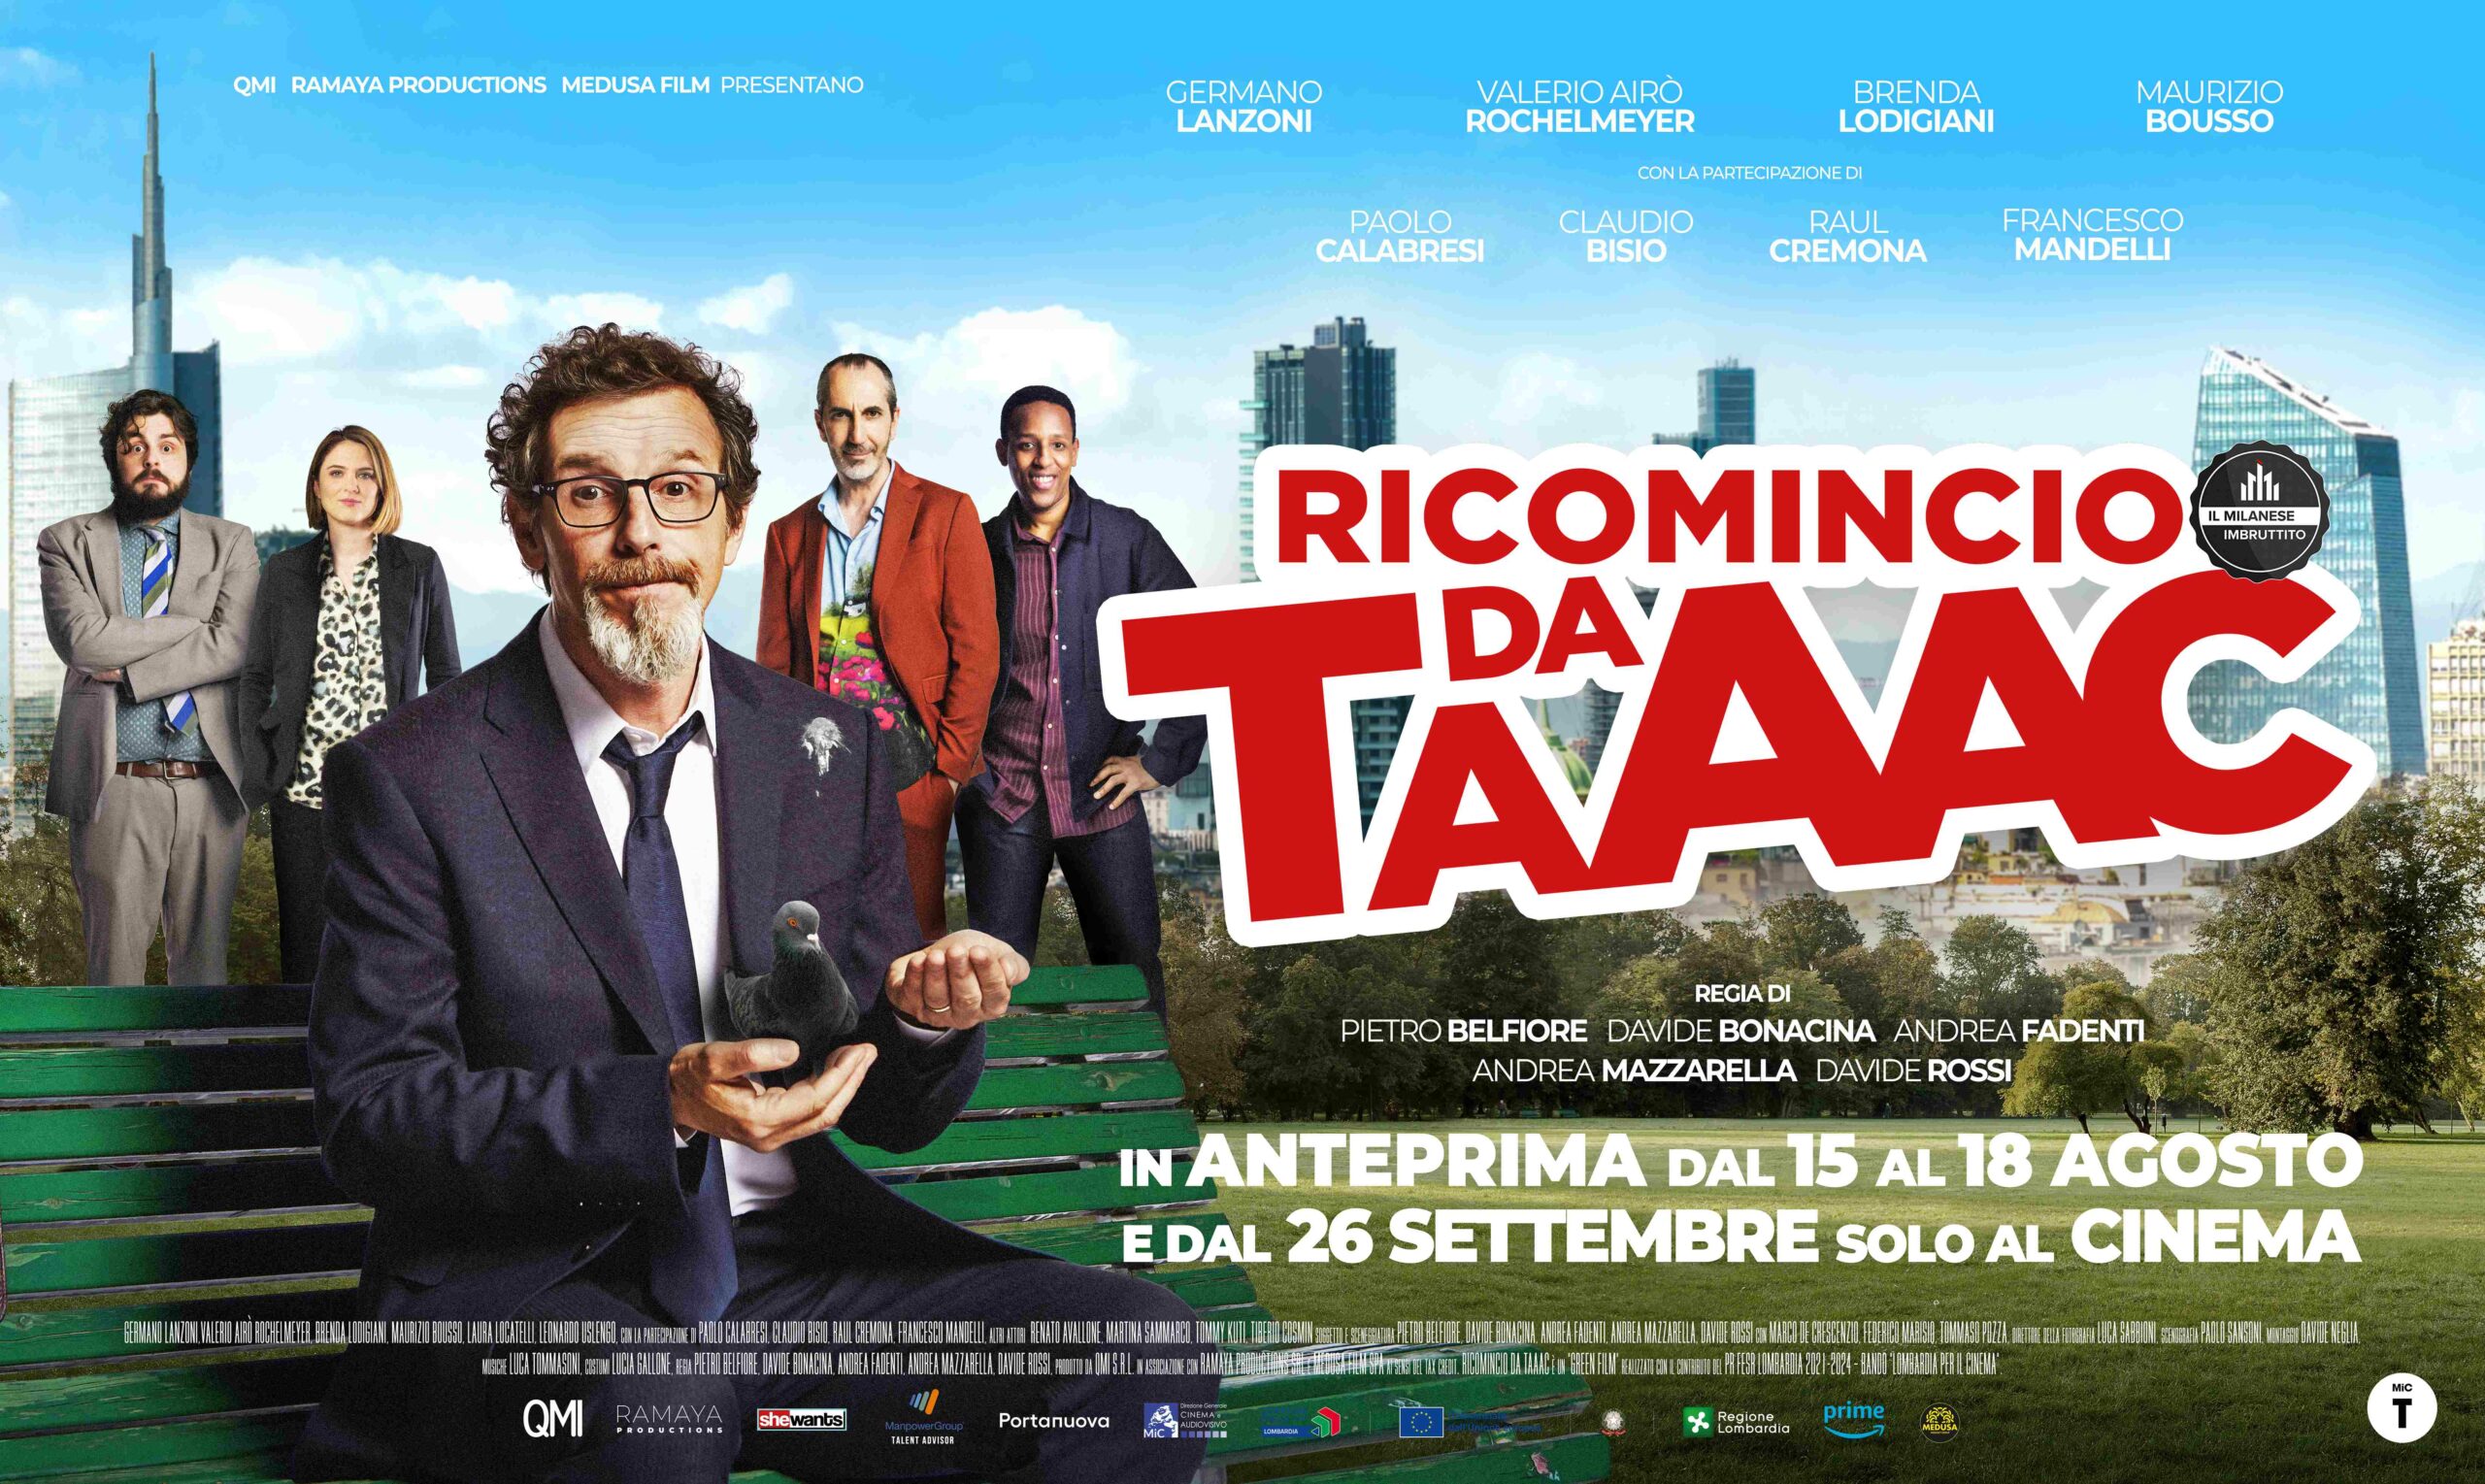 RICOMINCIO DA TAAAC, il trailer del secondo film de IL MILANESE IMBRUTTITO